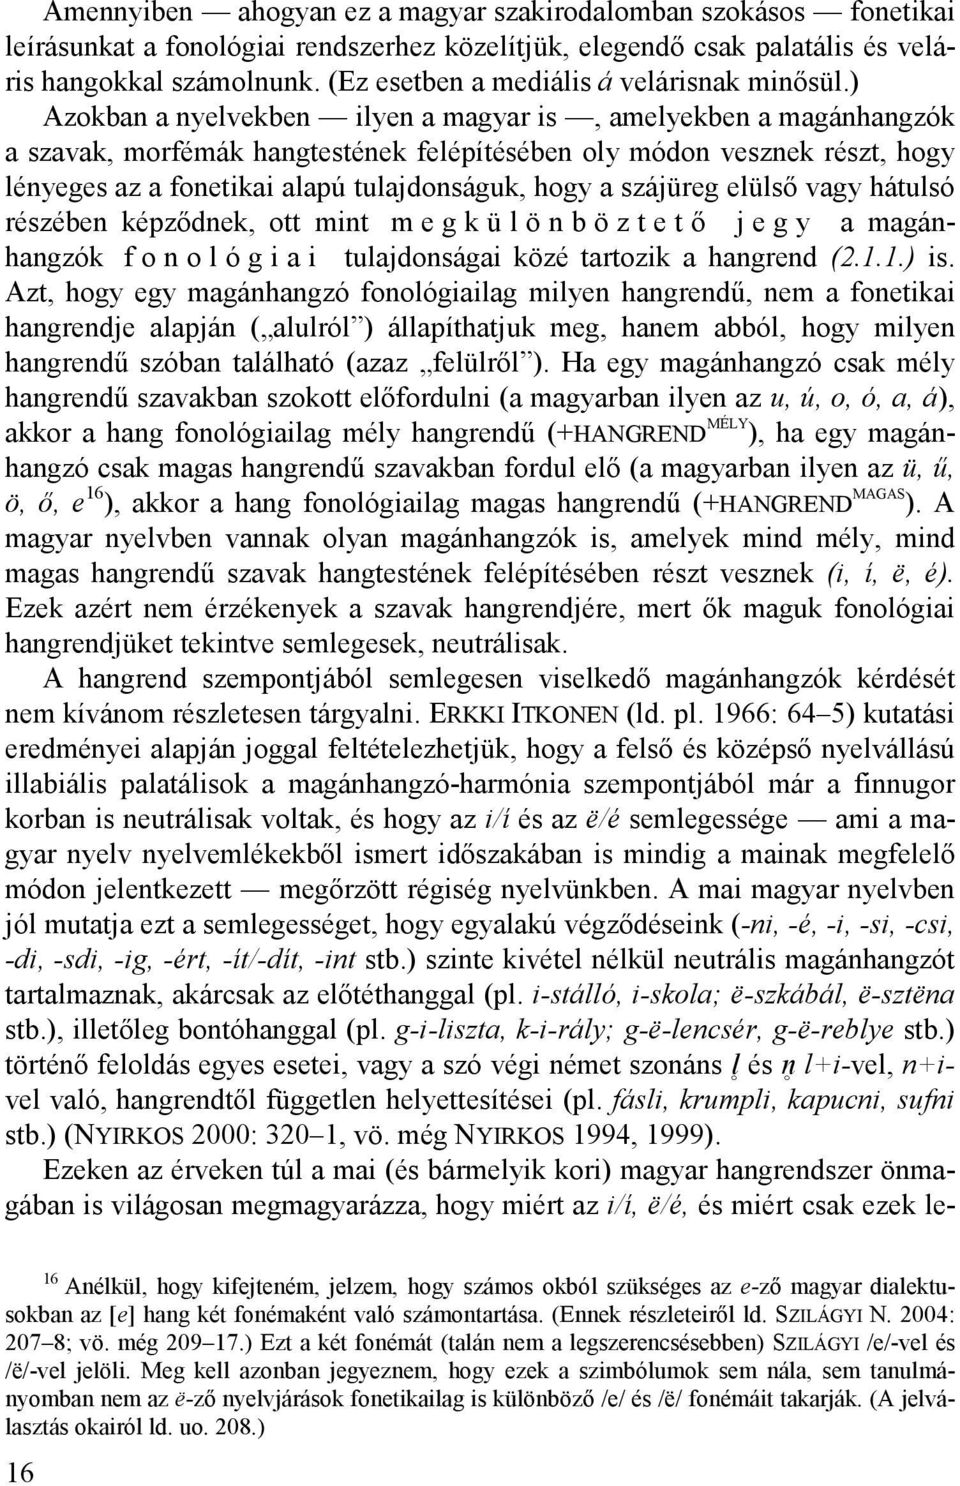 ) Azokban a nyelvekben ilyen a magyar is, amelyekben a magánhangzók a szavak, morfémák hangtestének felépítésében oly módon vesznek részt, hogy lényeges az a fonetikai alapú tulajdonságuk, hogy a